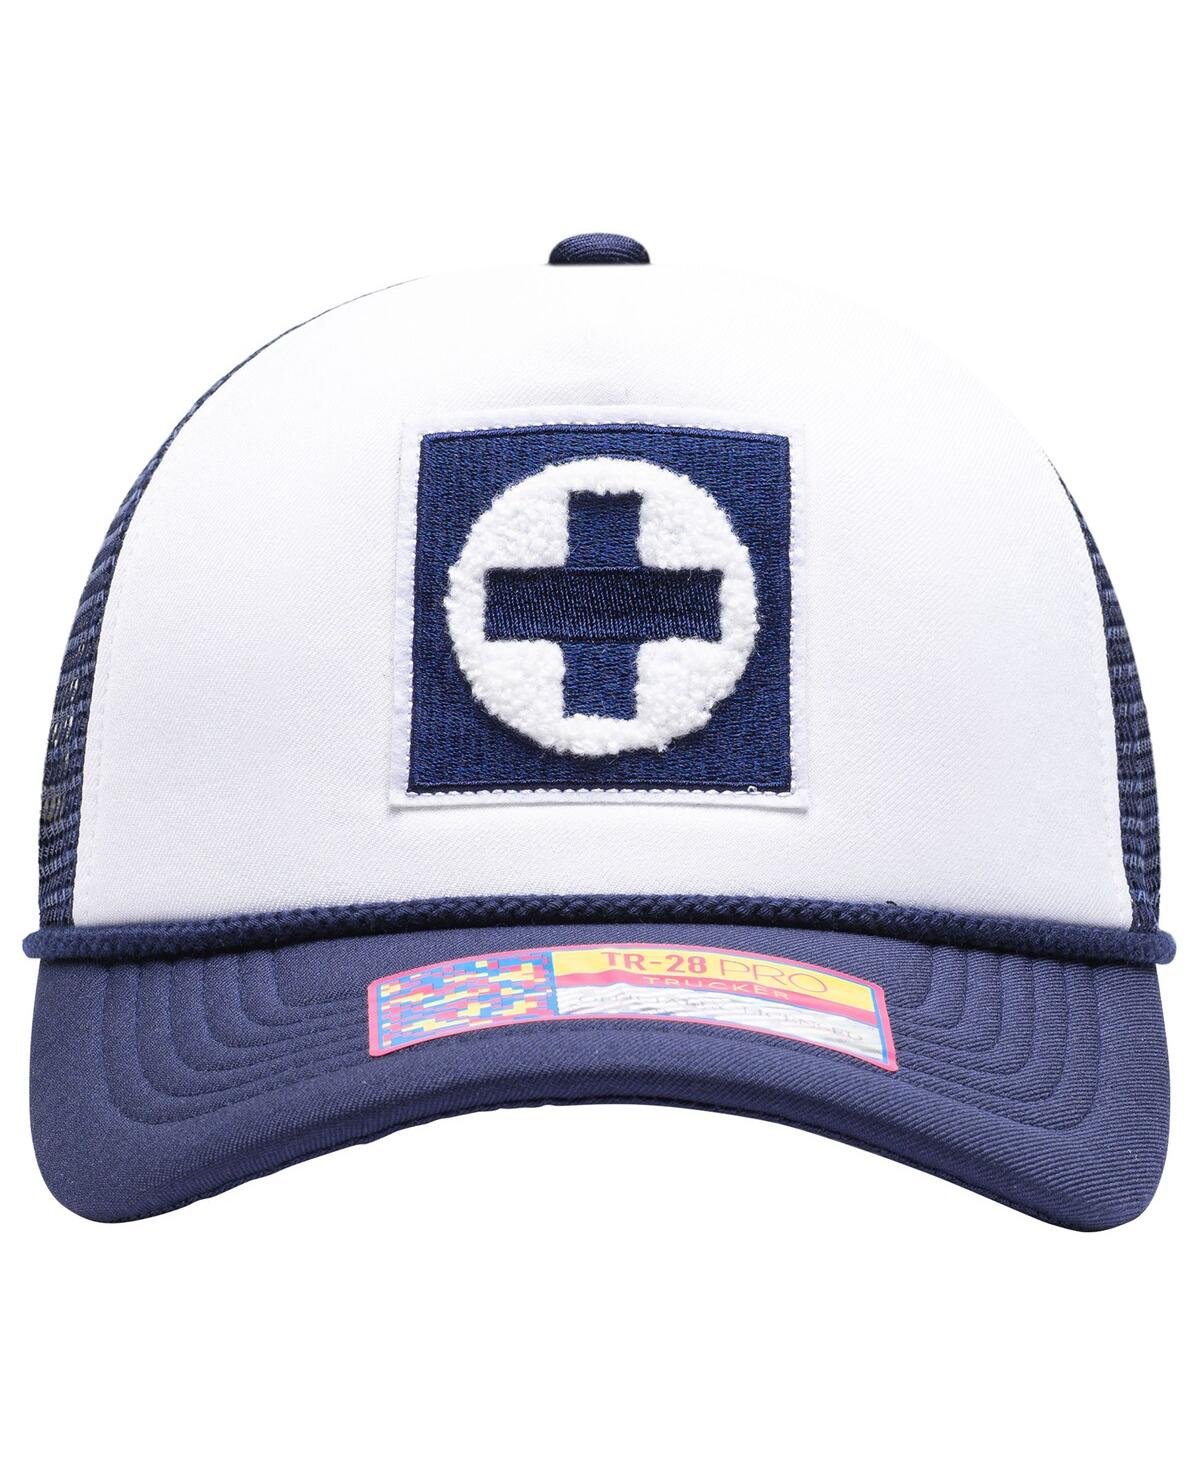 Shop Fan Ink Men's White Cruz Azul Scout Trucker Snapback Hat